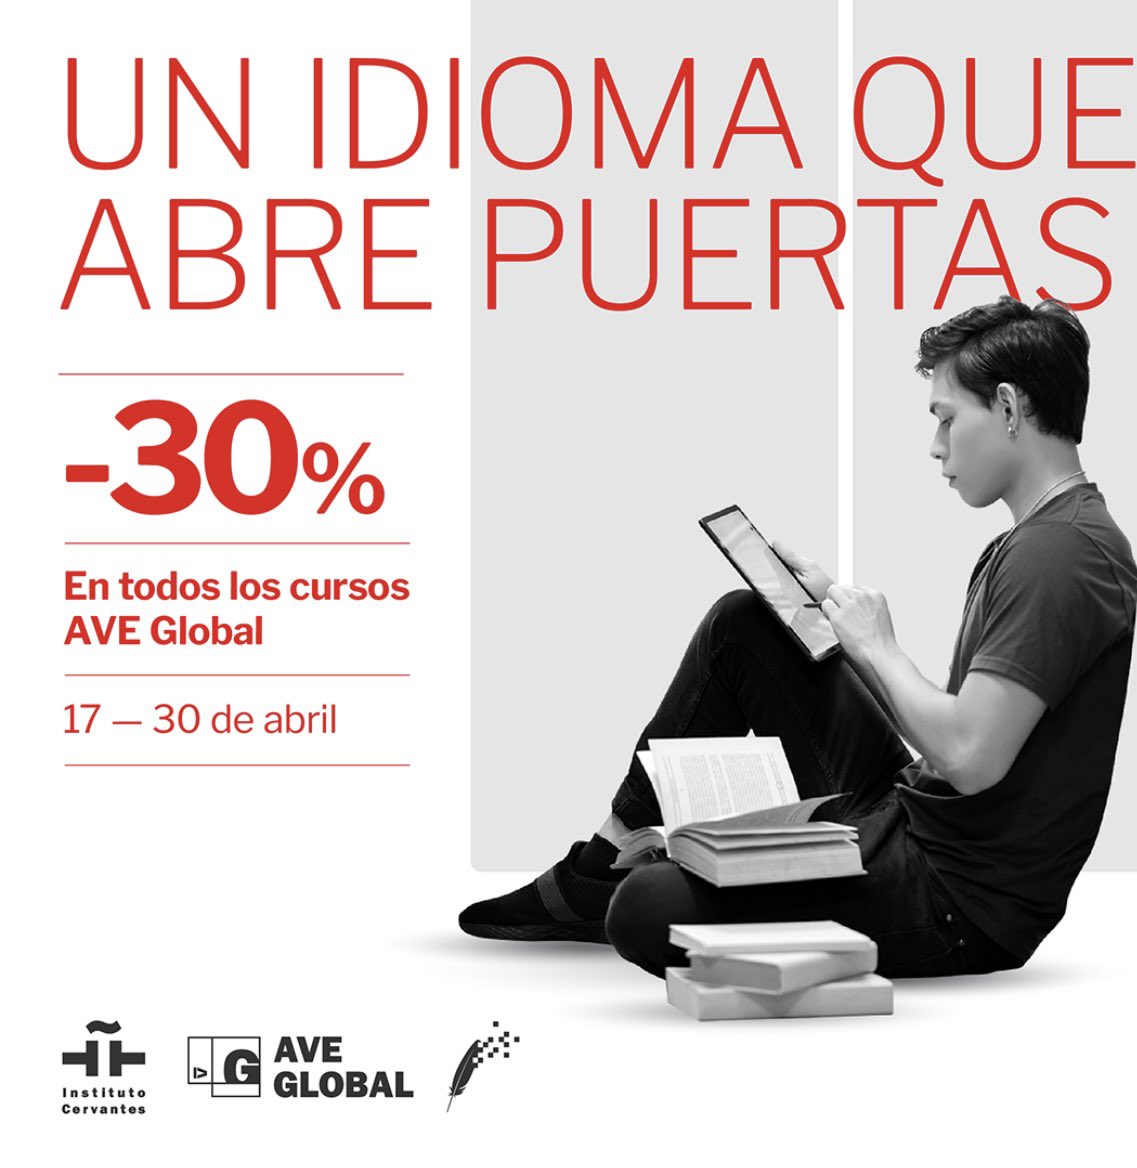 ¡Celebramos el #DíaInternacionaldelLibro con descuento en los cursos de español en línea #AVEGlobal!

Mejora tu nivel de español de forma autónoma y disfruta de un descuento del 30 % en todos los cursos AVE Global 👉 icerv.es/Z4d